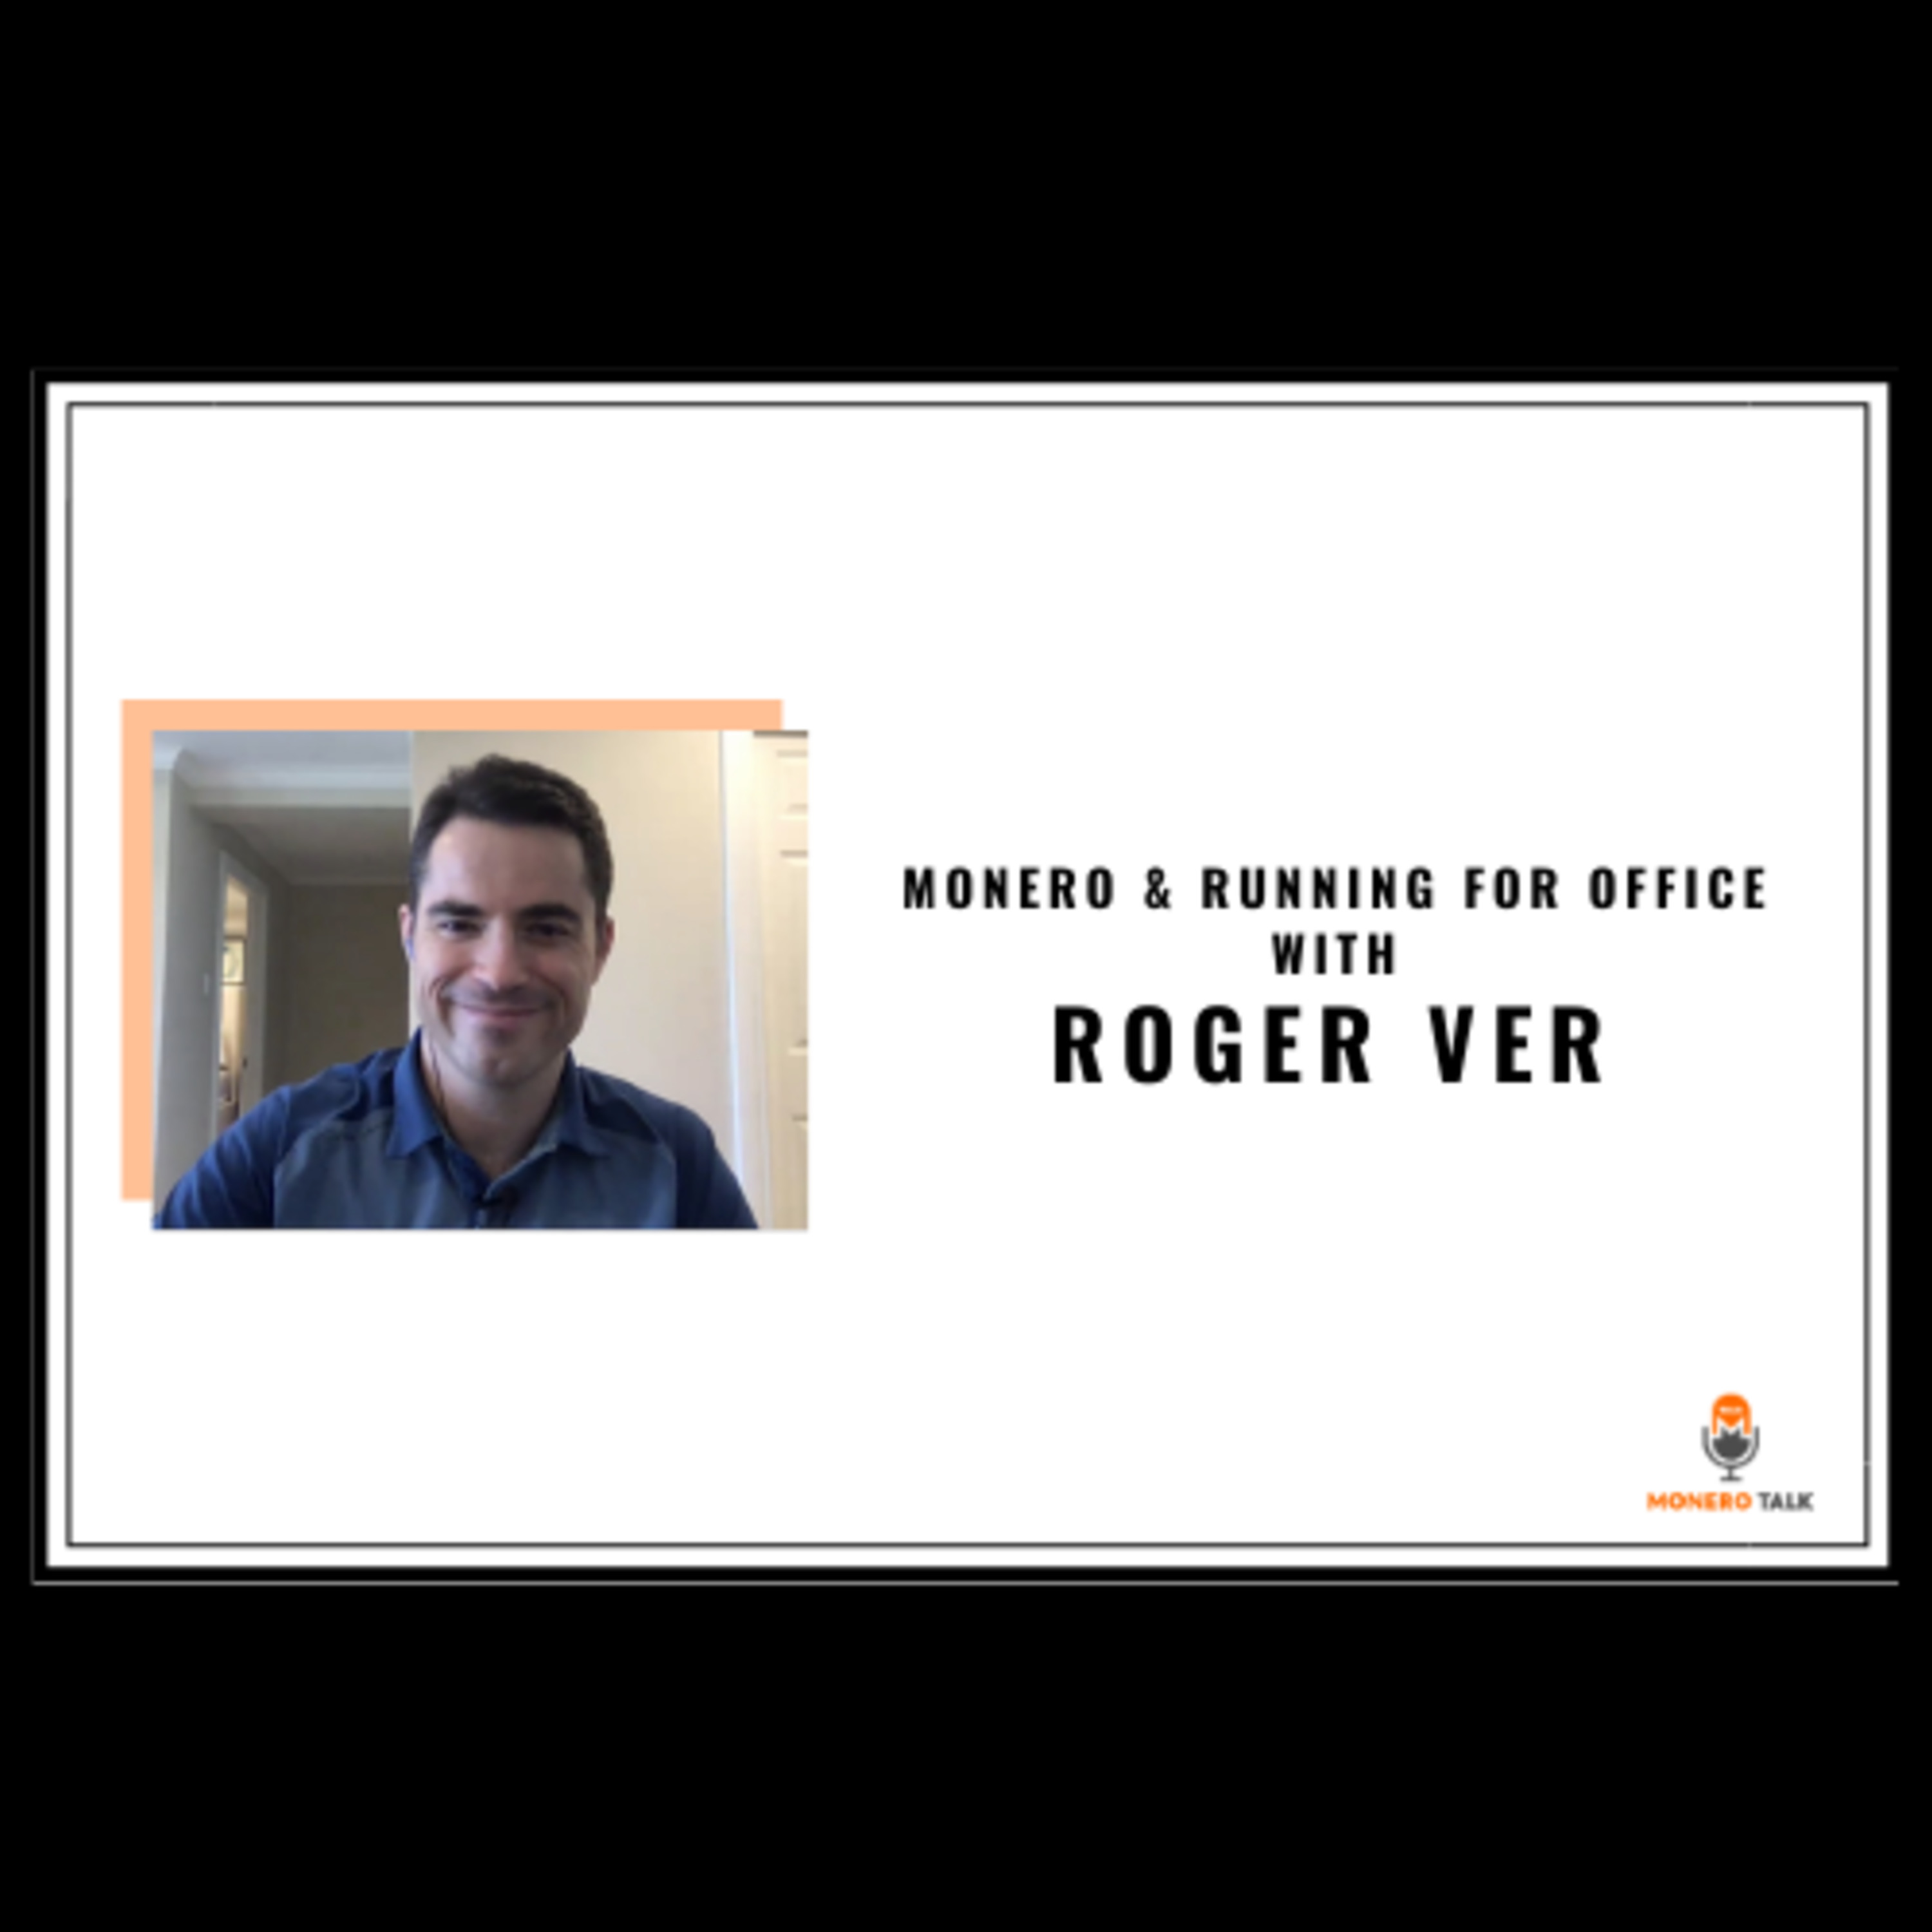 Roger Ver: Monero & Running for Office